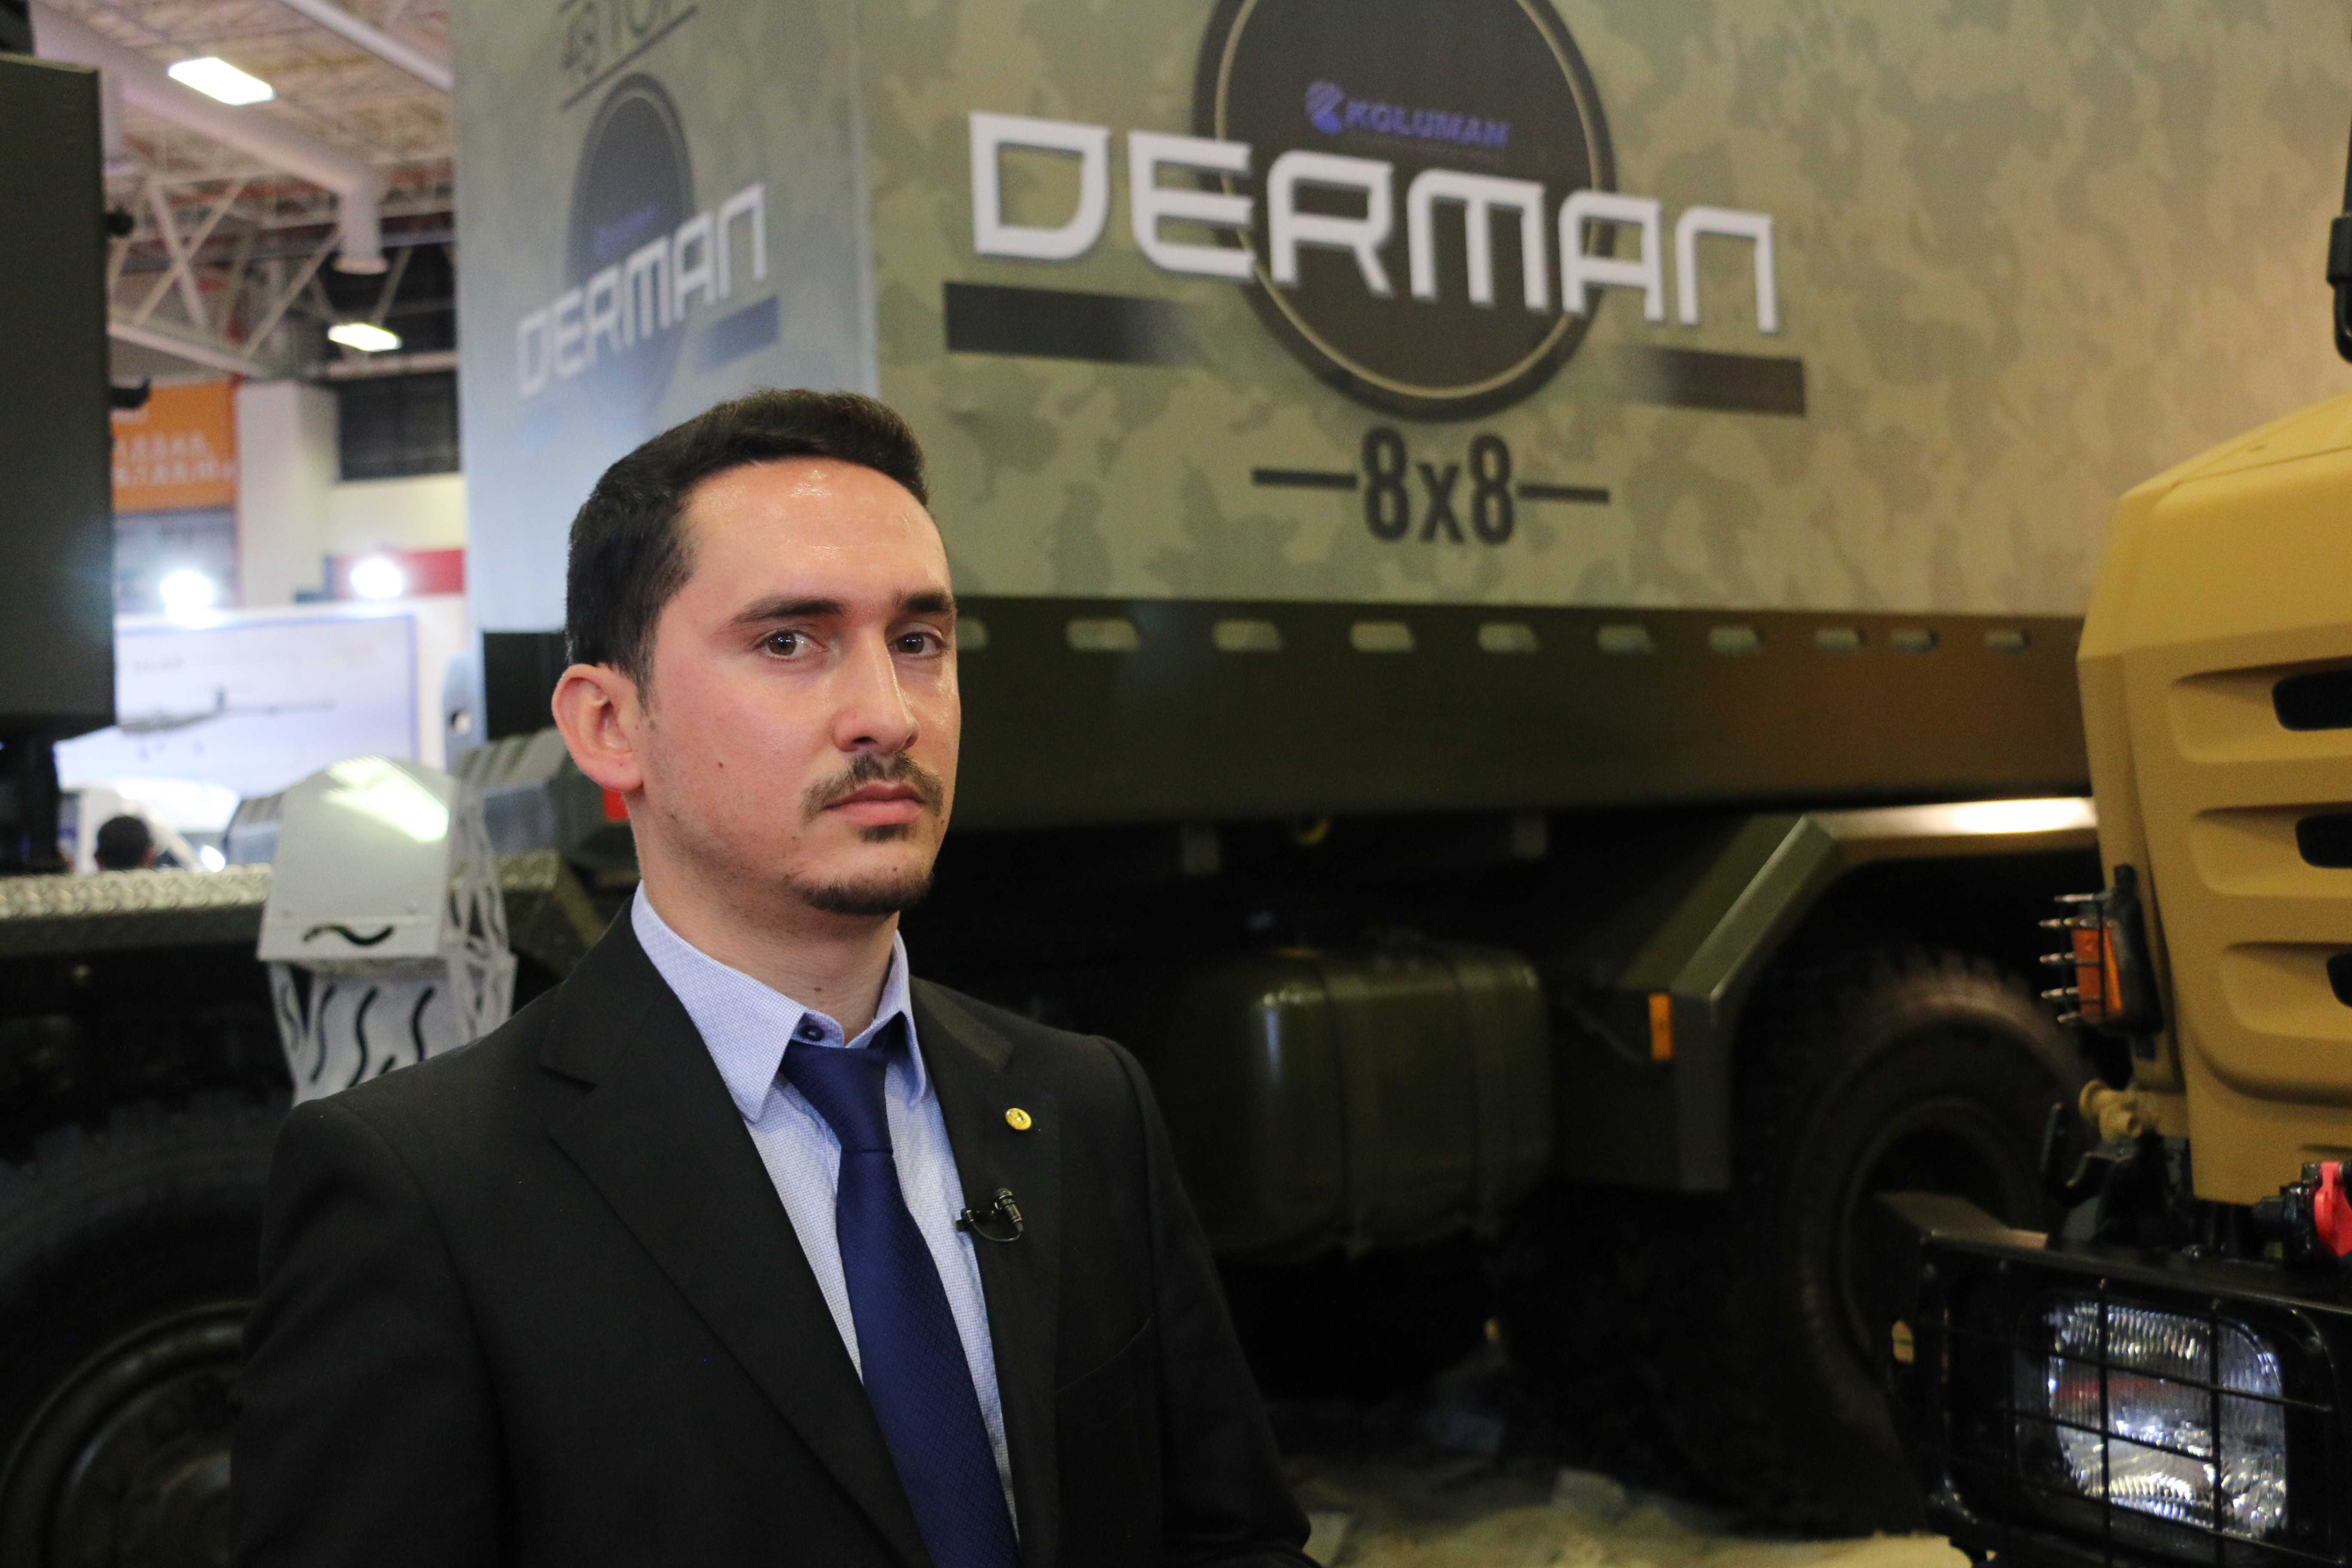 Askeri lojistik destek aracı "Derman" NATO test sürecinde